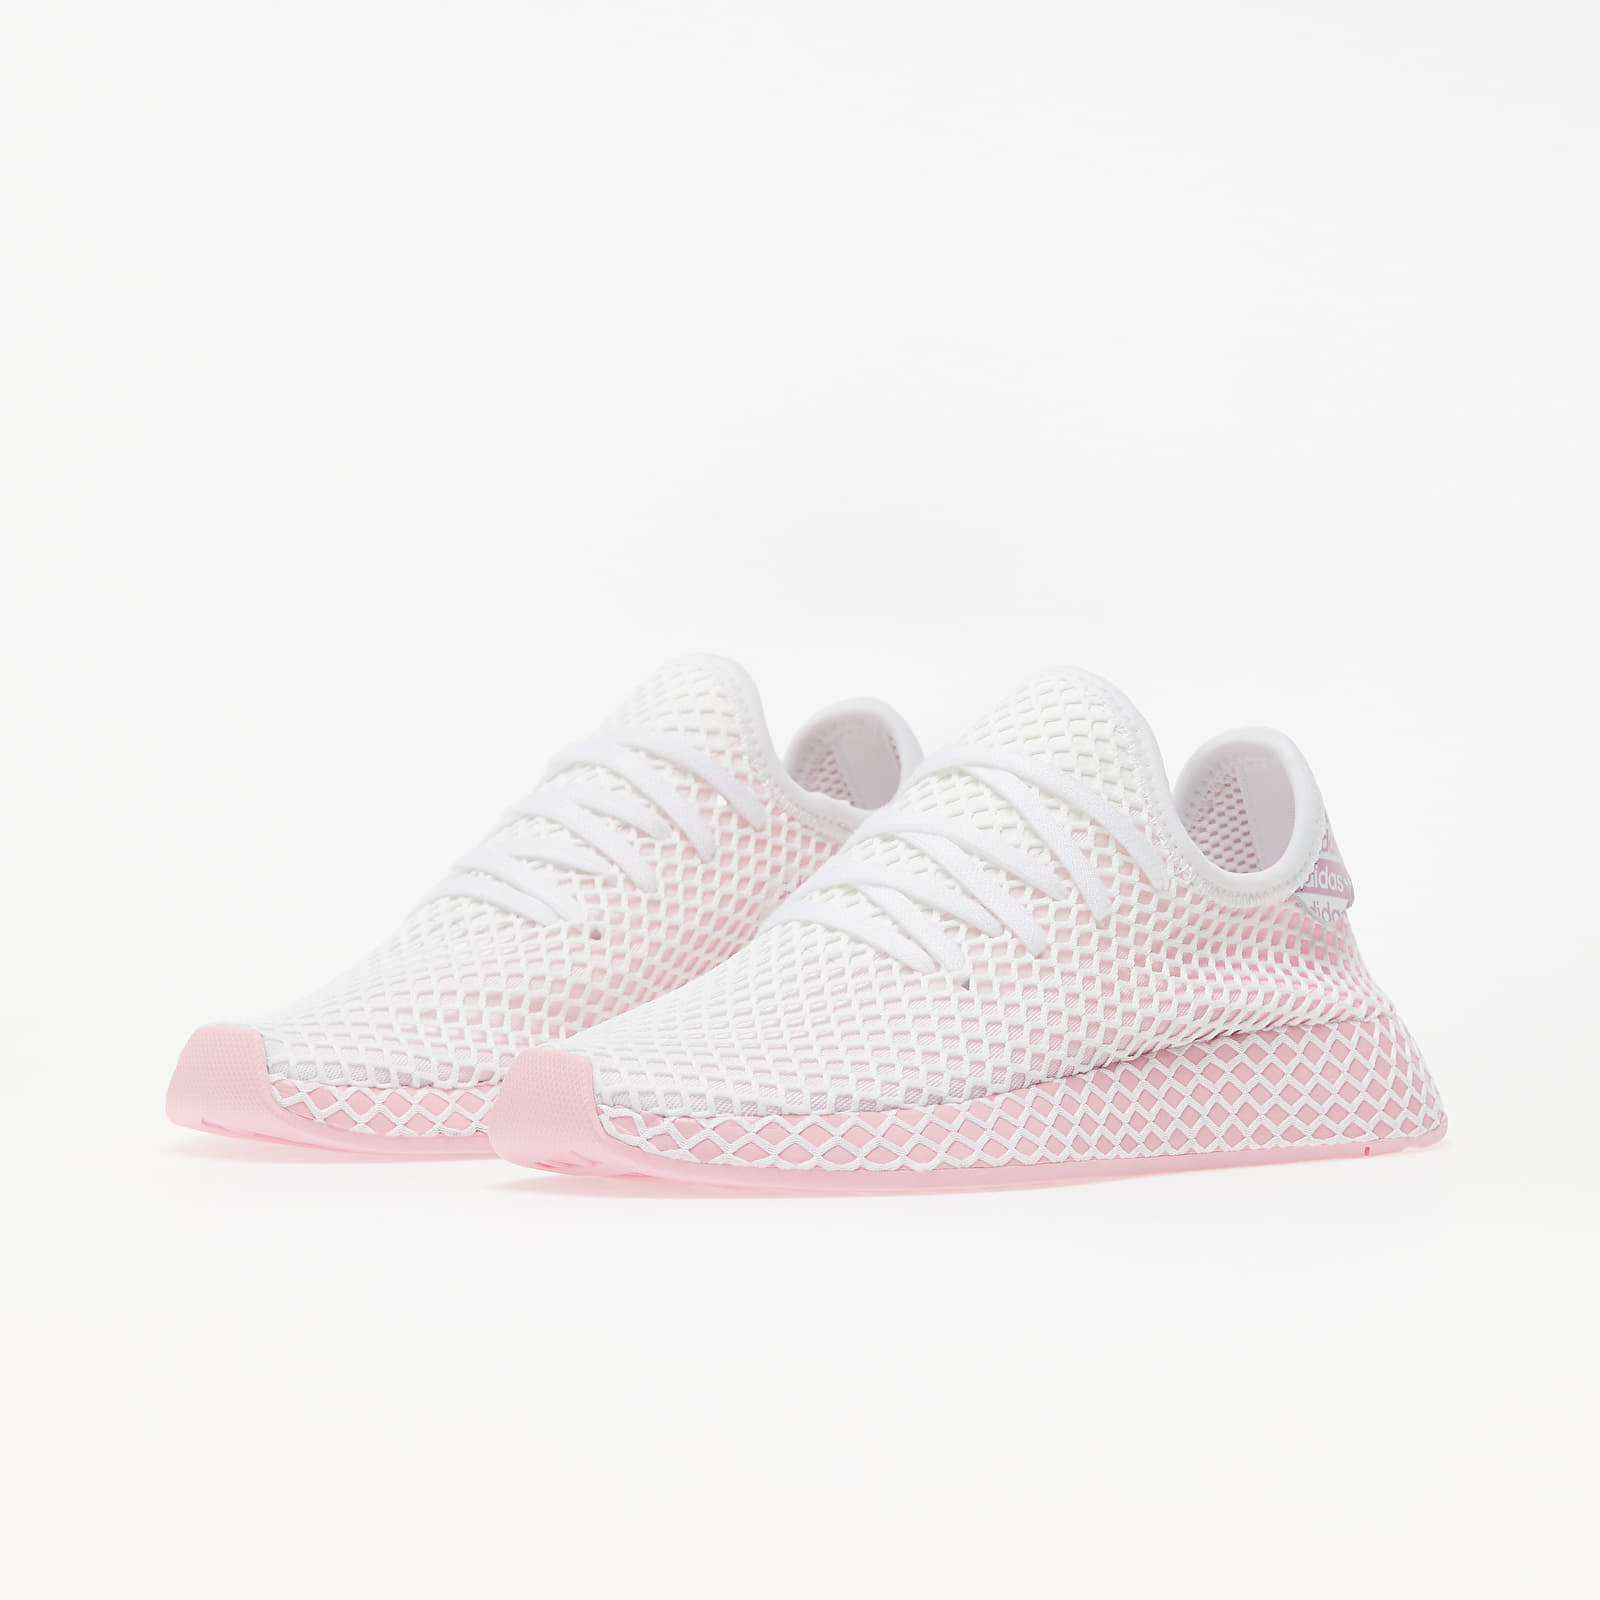 Chaussures et baskets femme adidas Deerupt Runner W True Pink/ True Pink/  Ftw White | Footshop